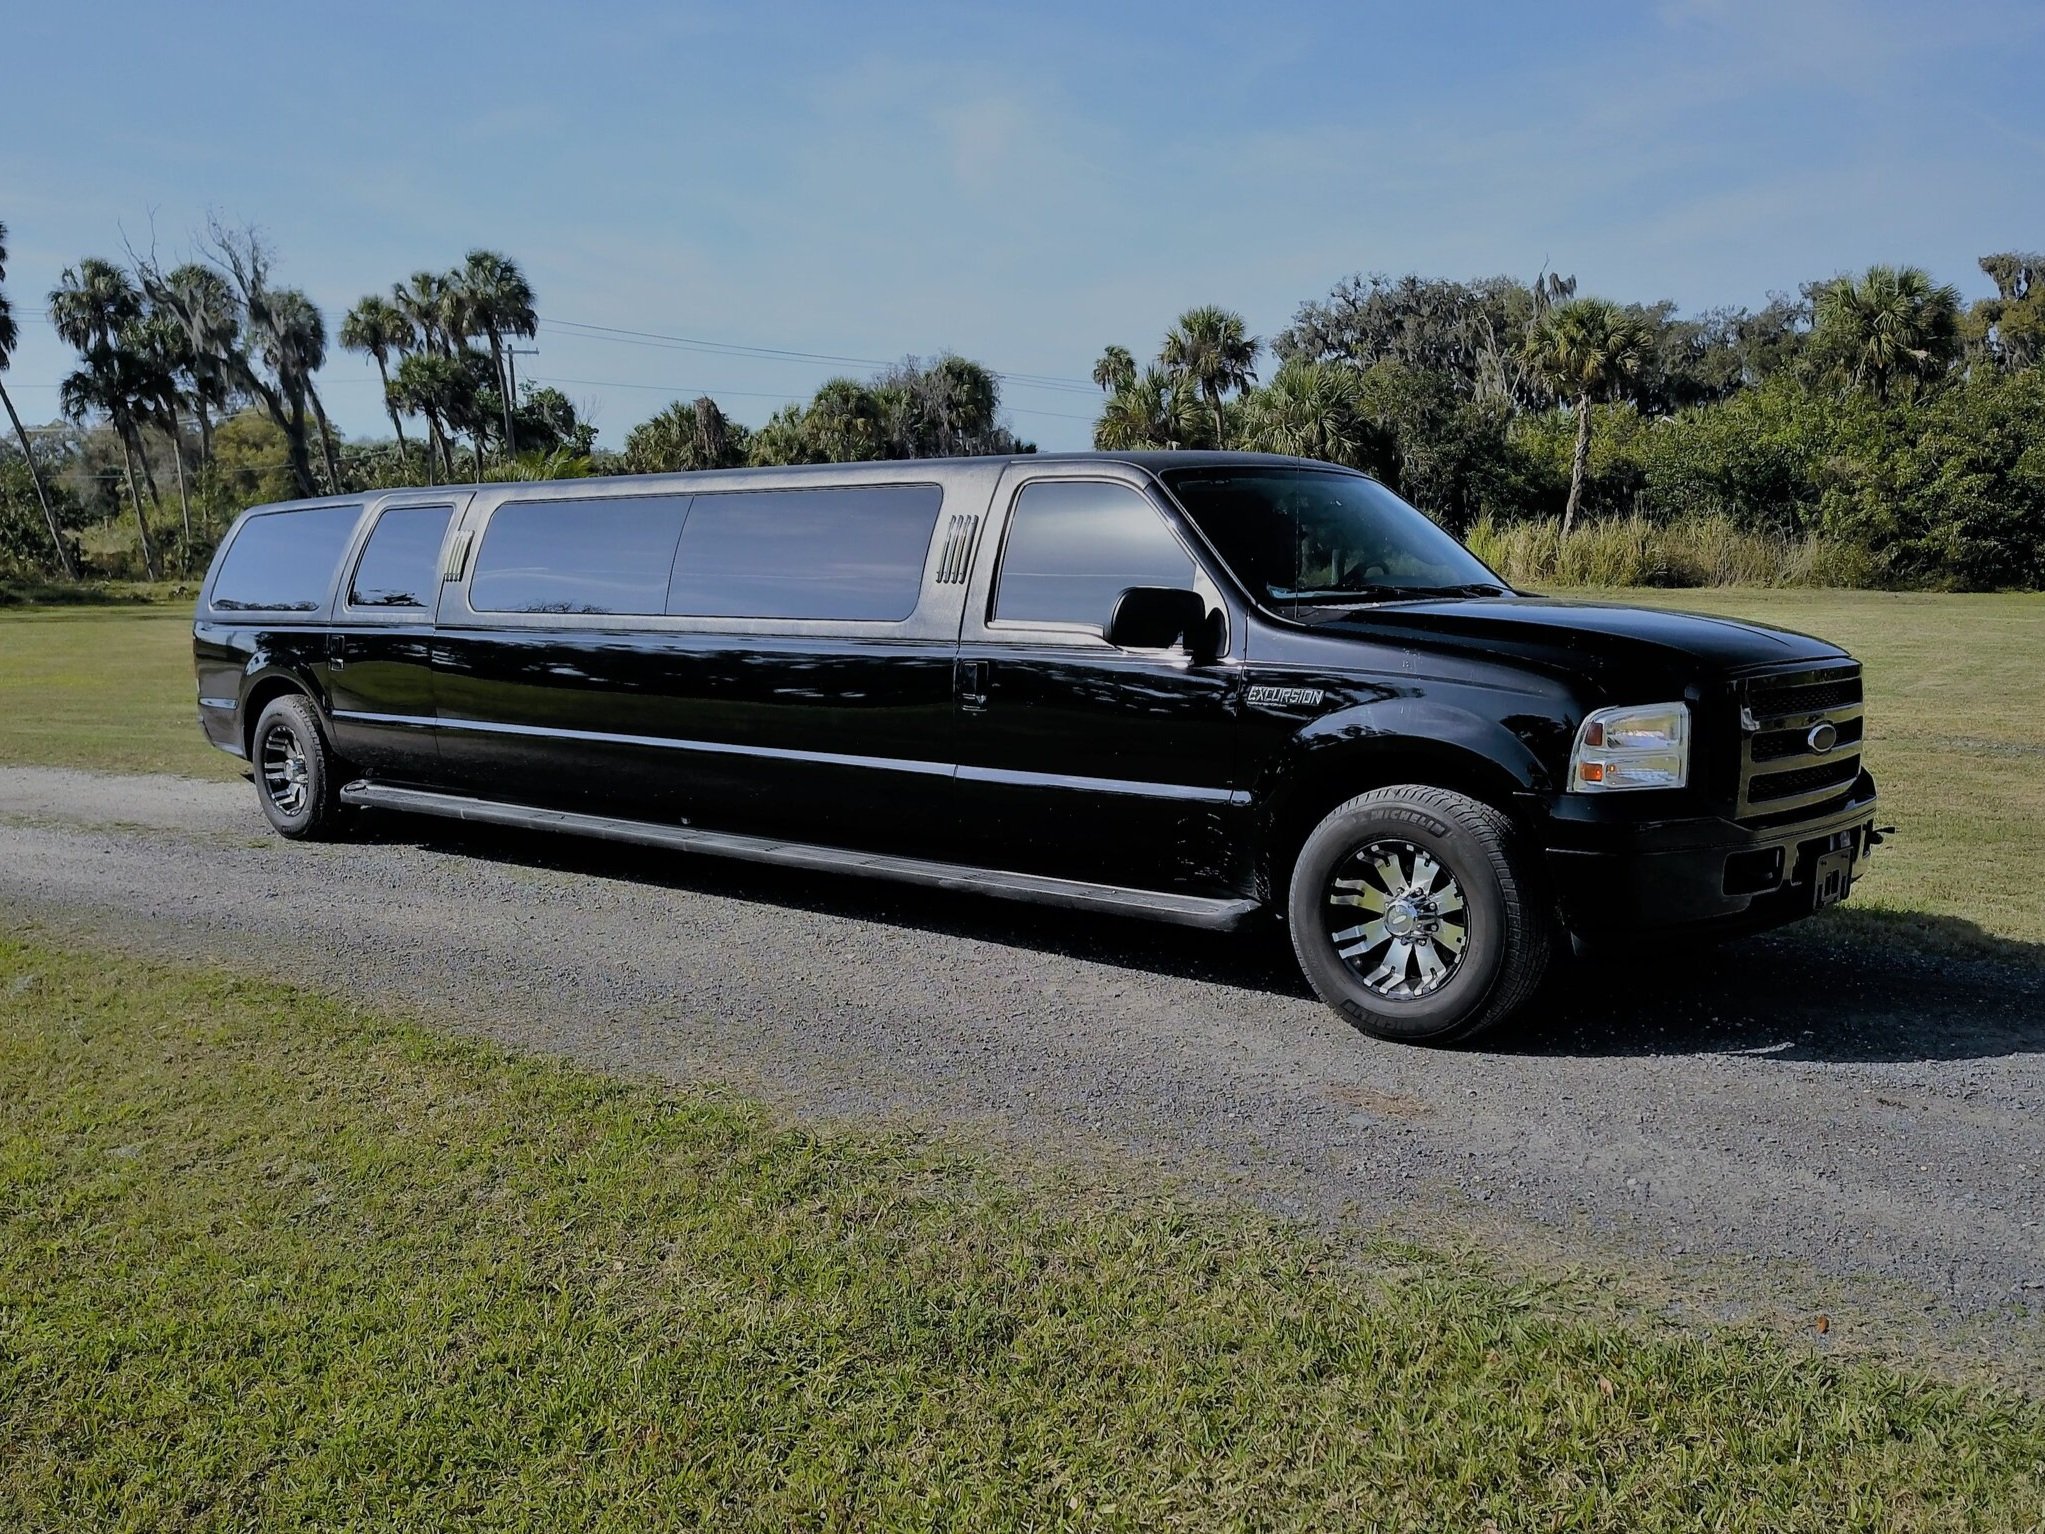 Black Excursion Limousine 12 Passenger